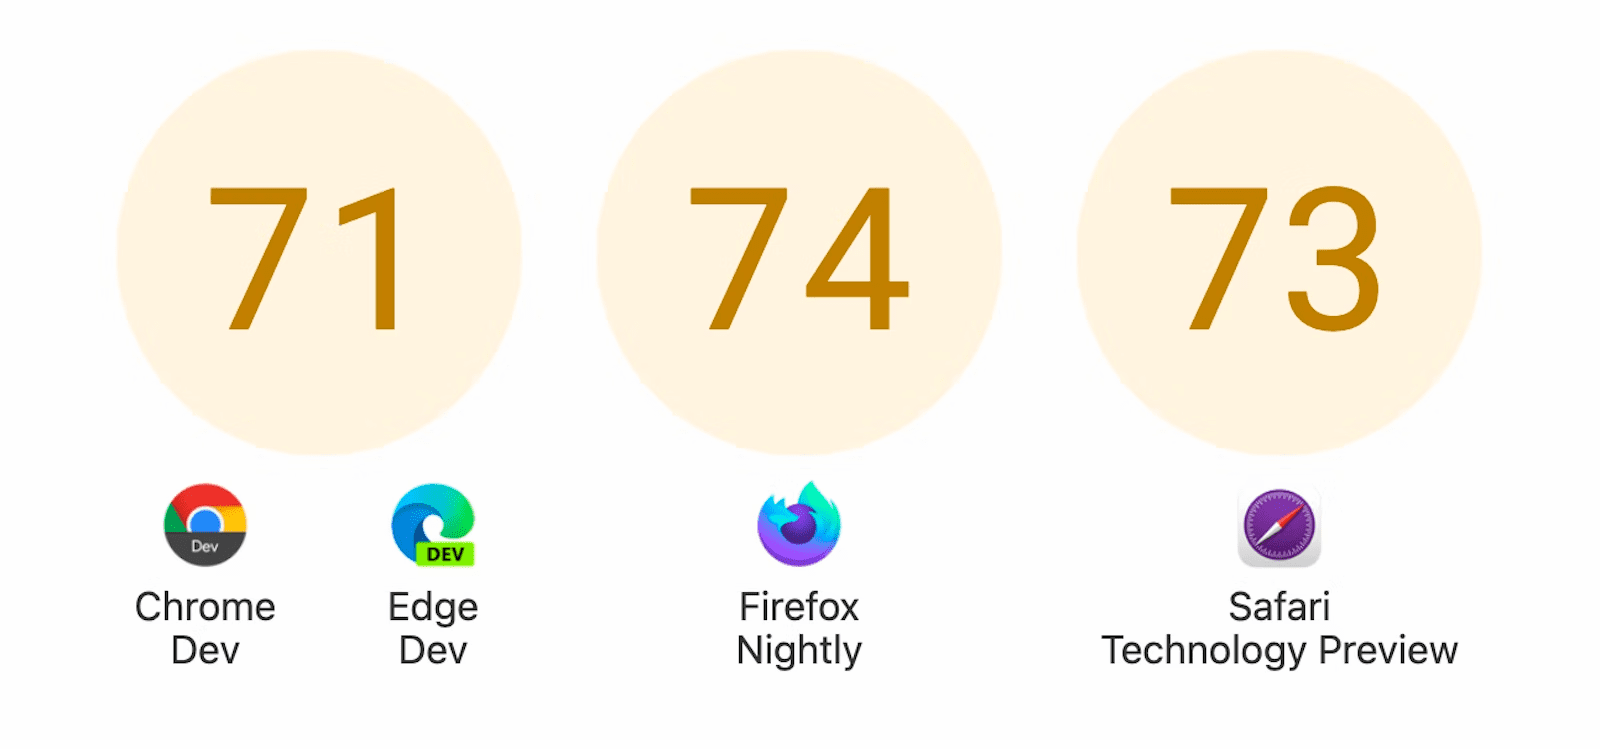 স্কোর সহ তিনটি চেনাশোনা দেখানো হচ্ছে: Chrome Dev এবং Edge Dev-এর জন্য 71, Firefox Nightly-এর জন্য 74, এবং Safari Technology Preview-এর জন্য 73৷